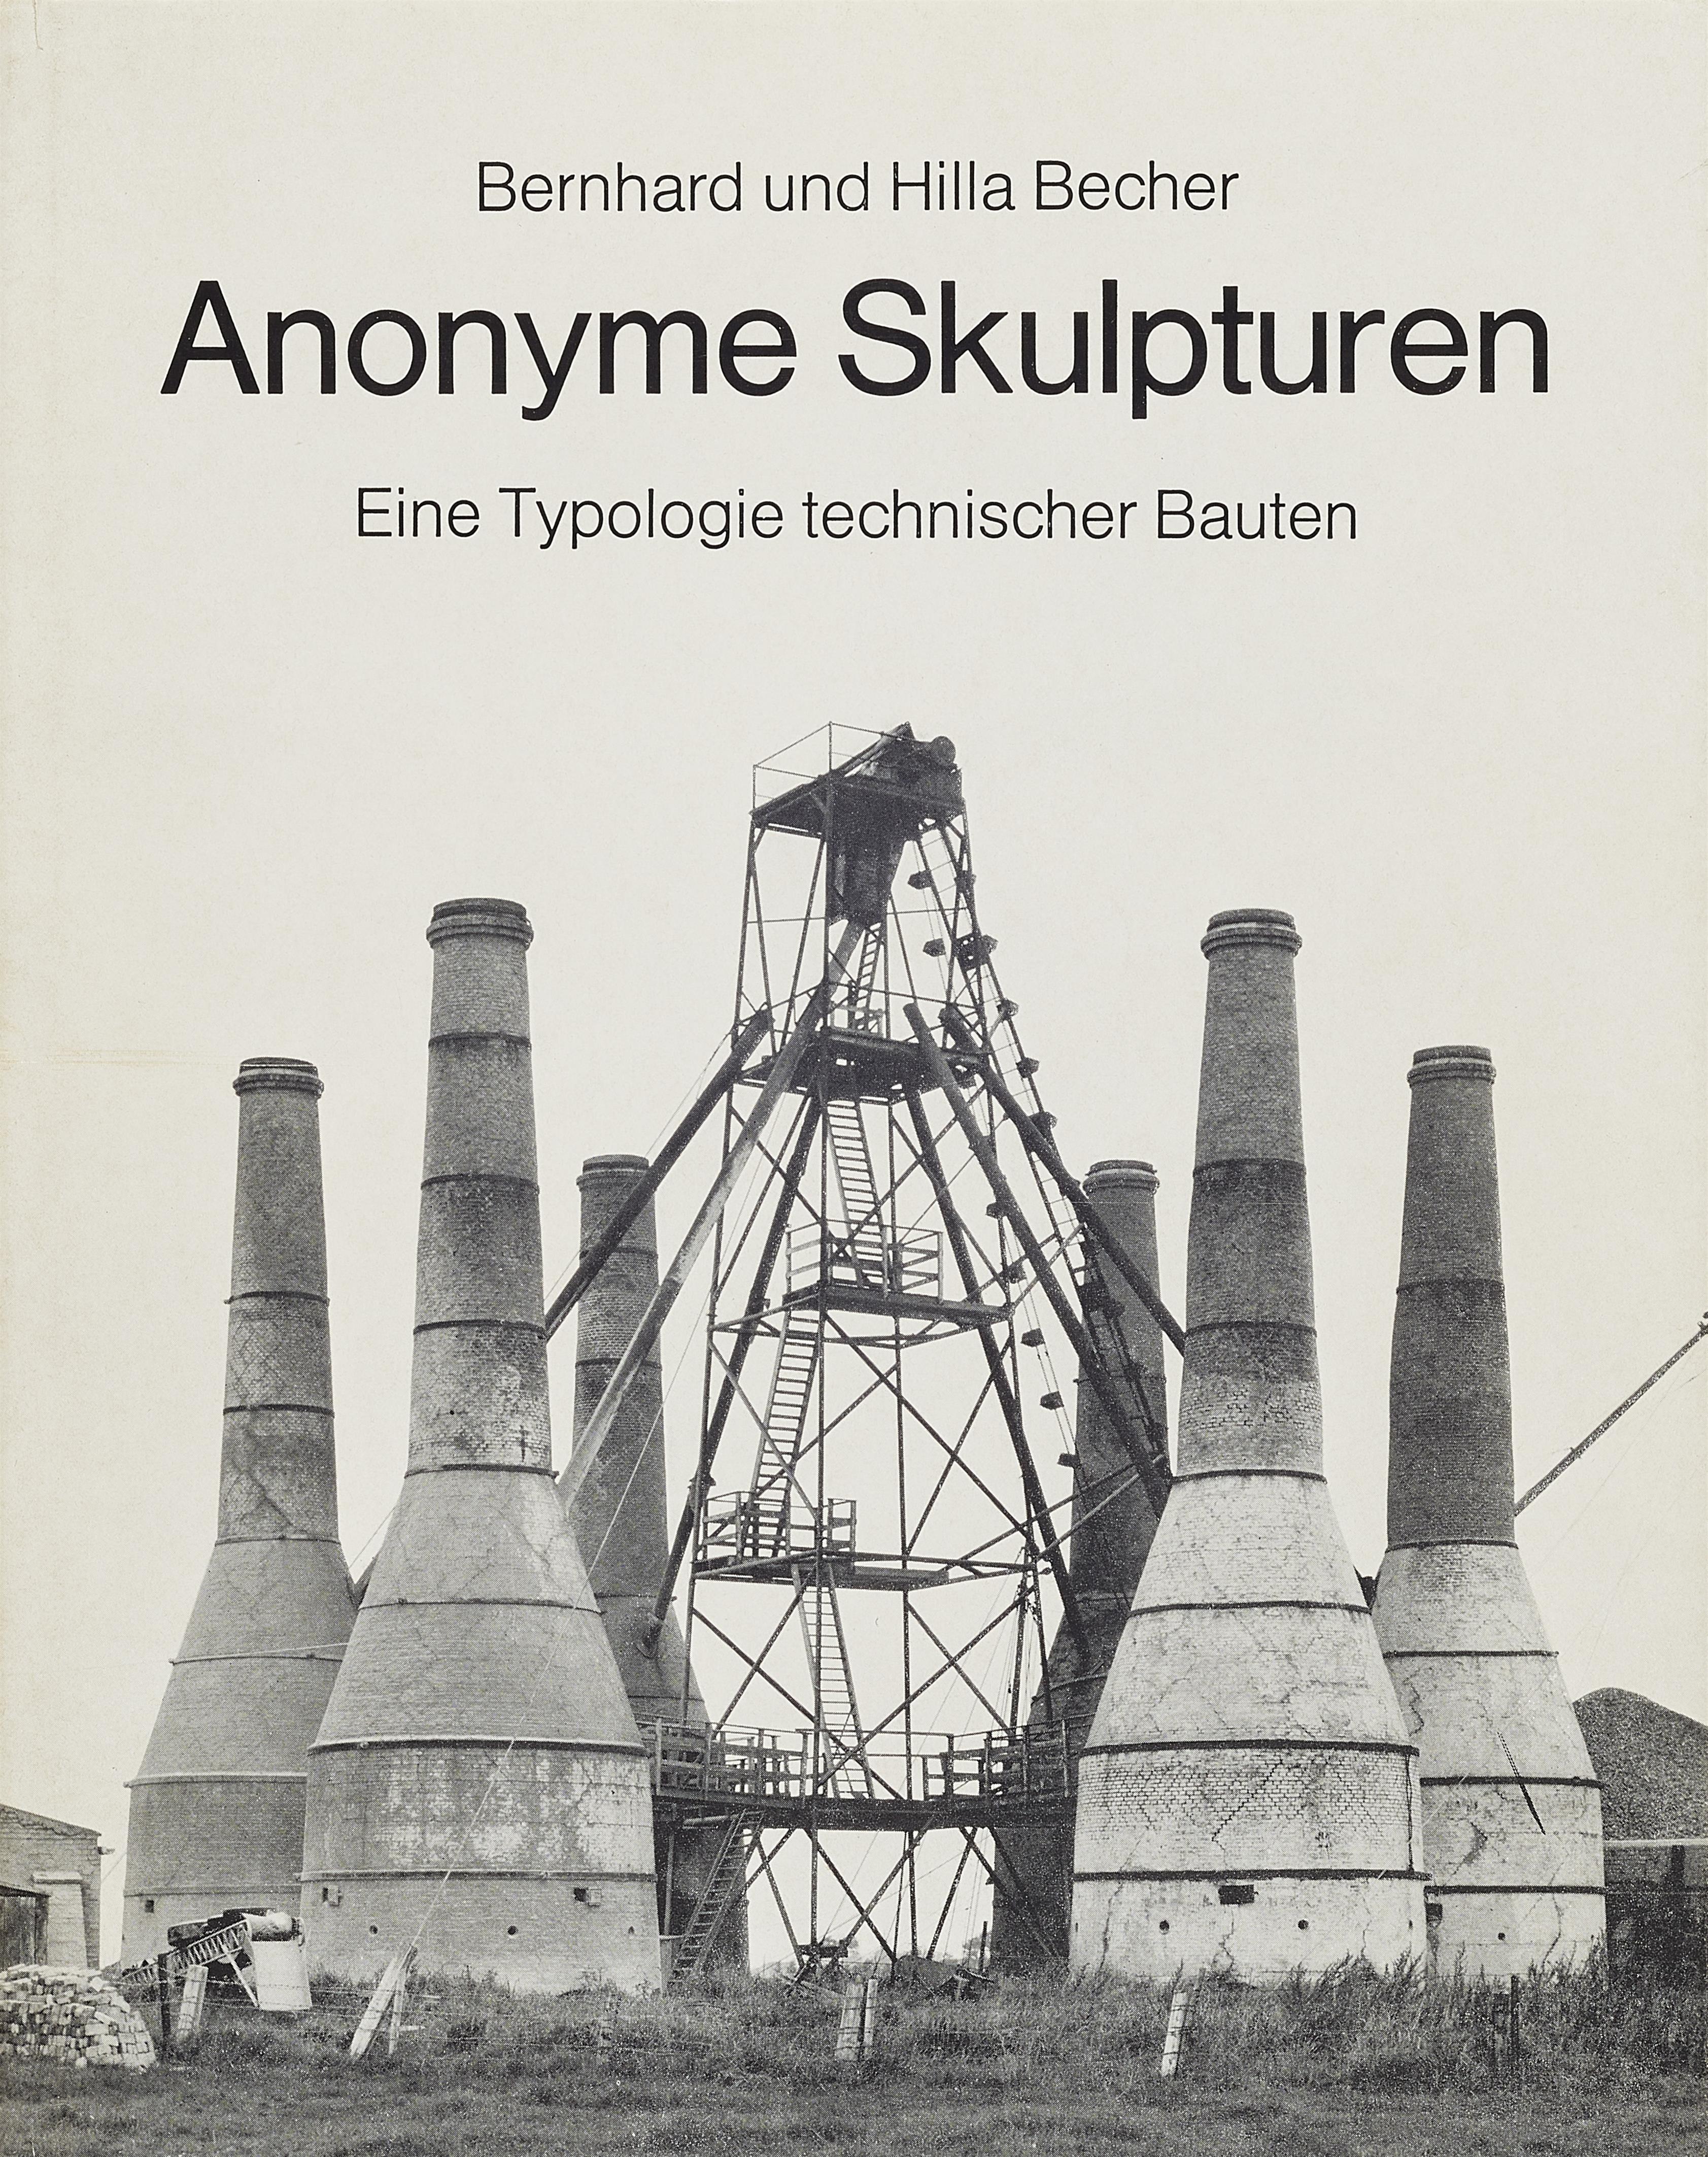 Bernd and Hilla Becher - Anonyme Skulpturen. Eine Typologie technischer Bauten - image-1